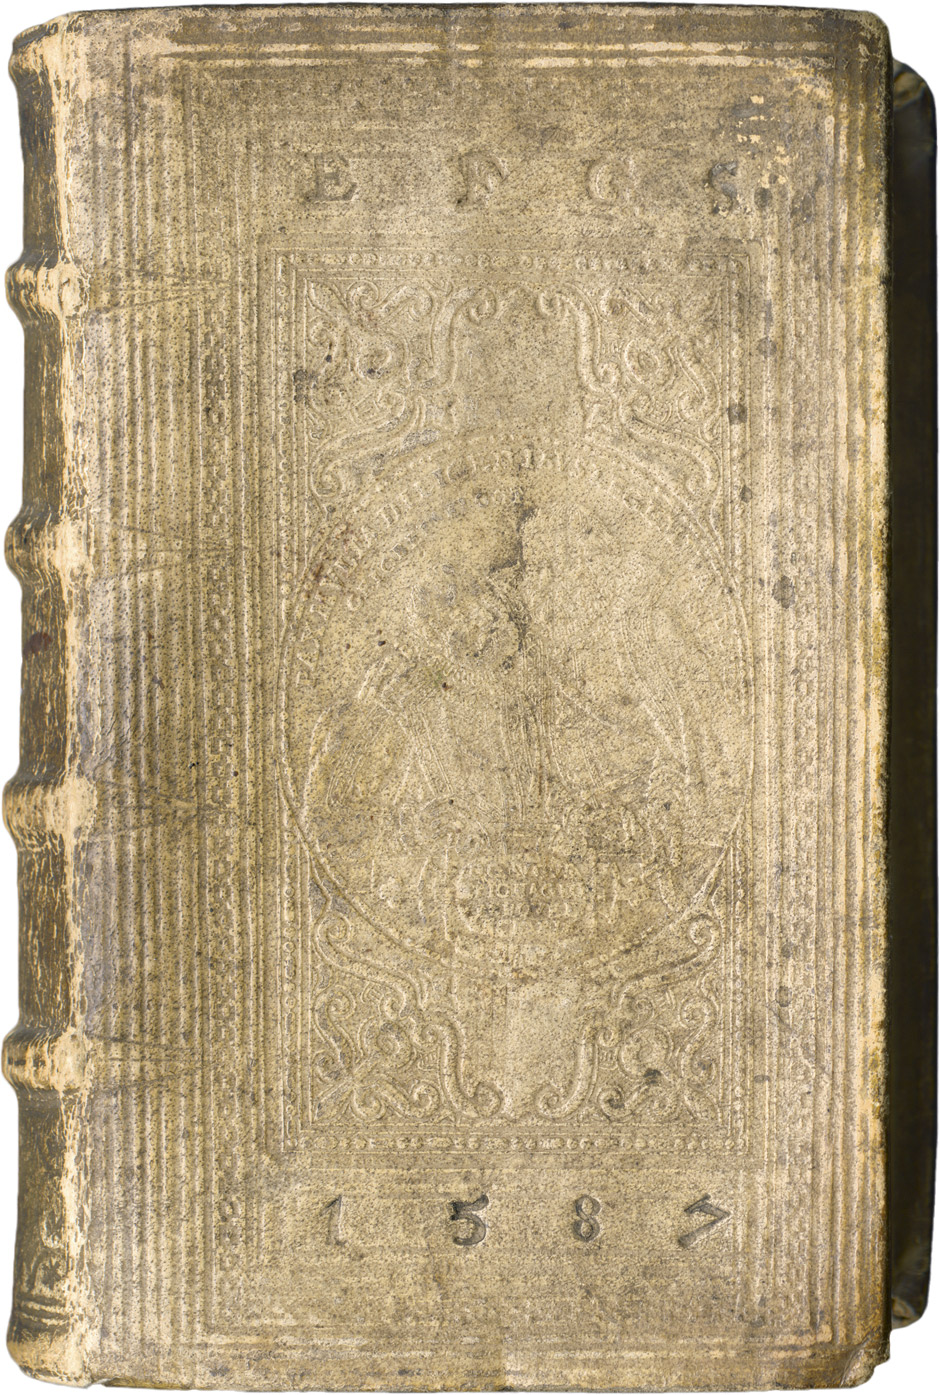 Lot 1184, Auction  115, Scaliger, Julius Caesar, Poetices libri septem